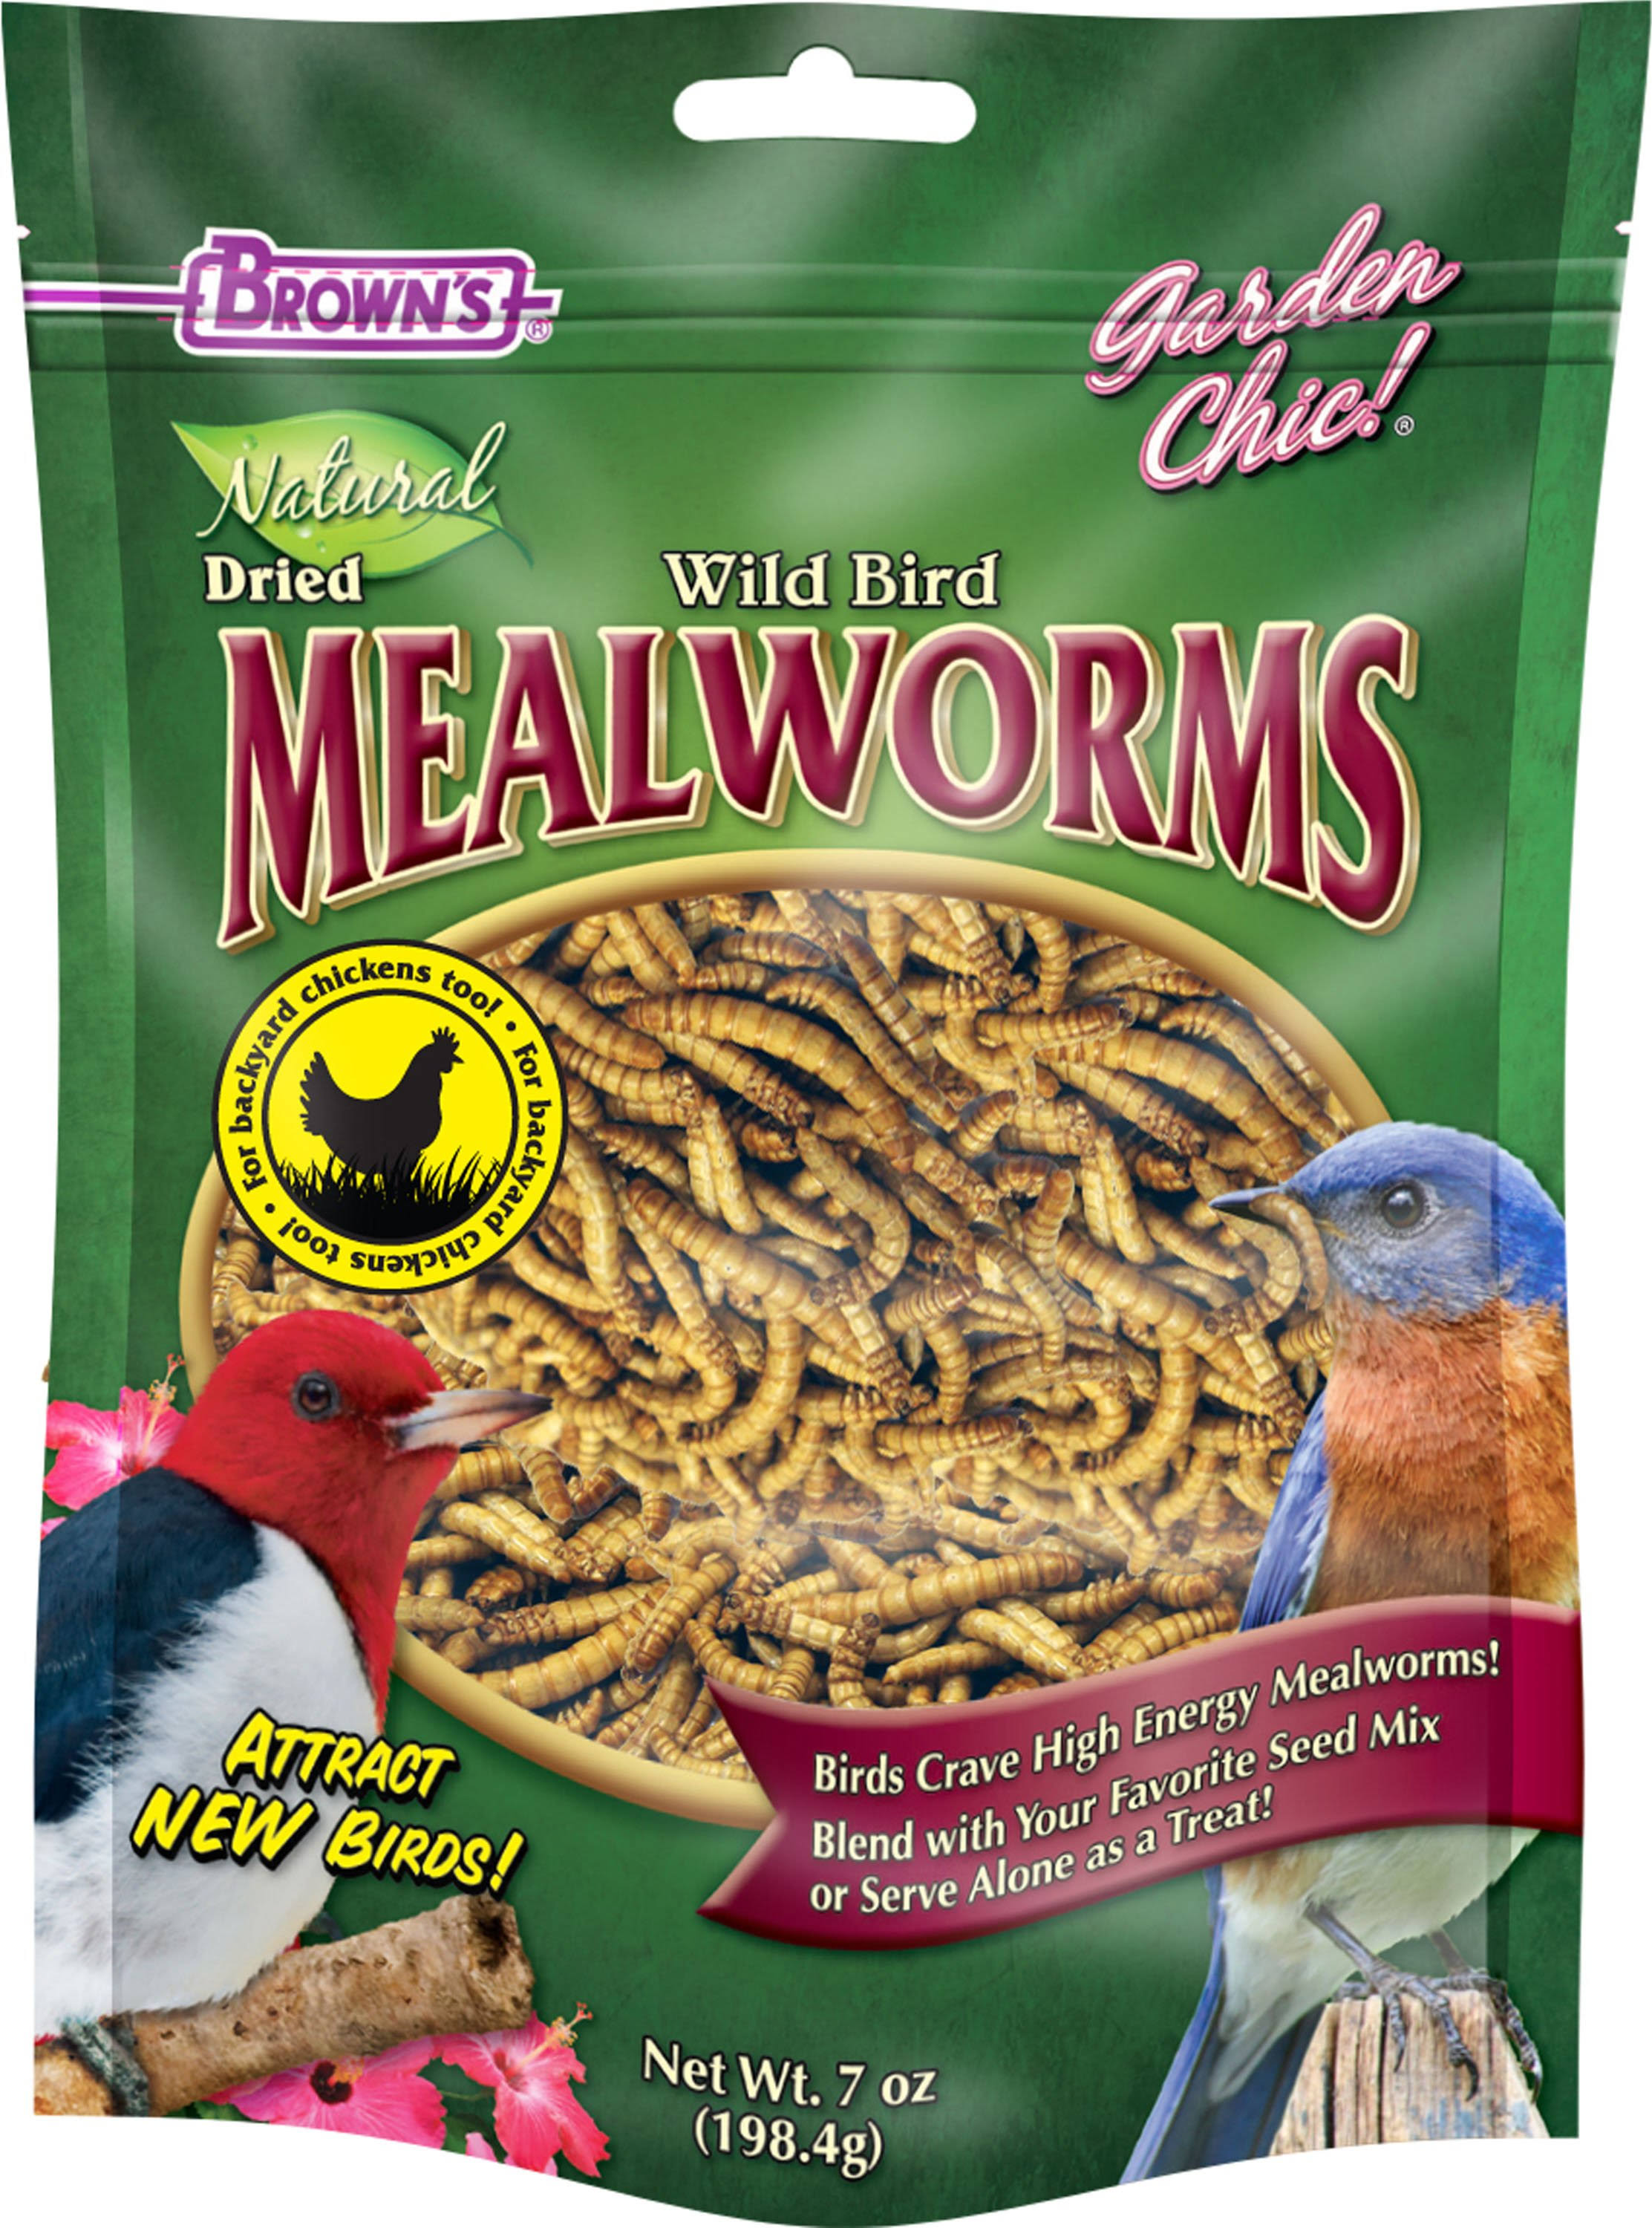 F.M. Brown's Garden Chic Wild Bird Mealworms